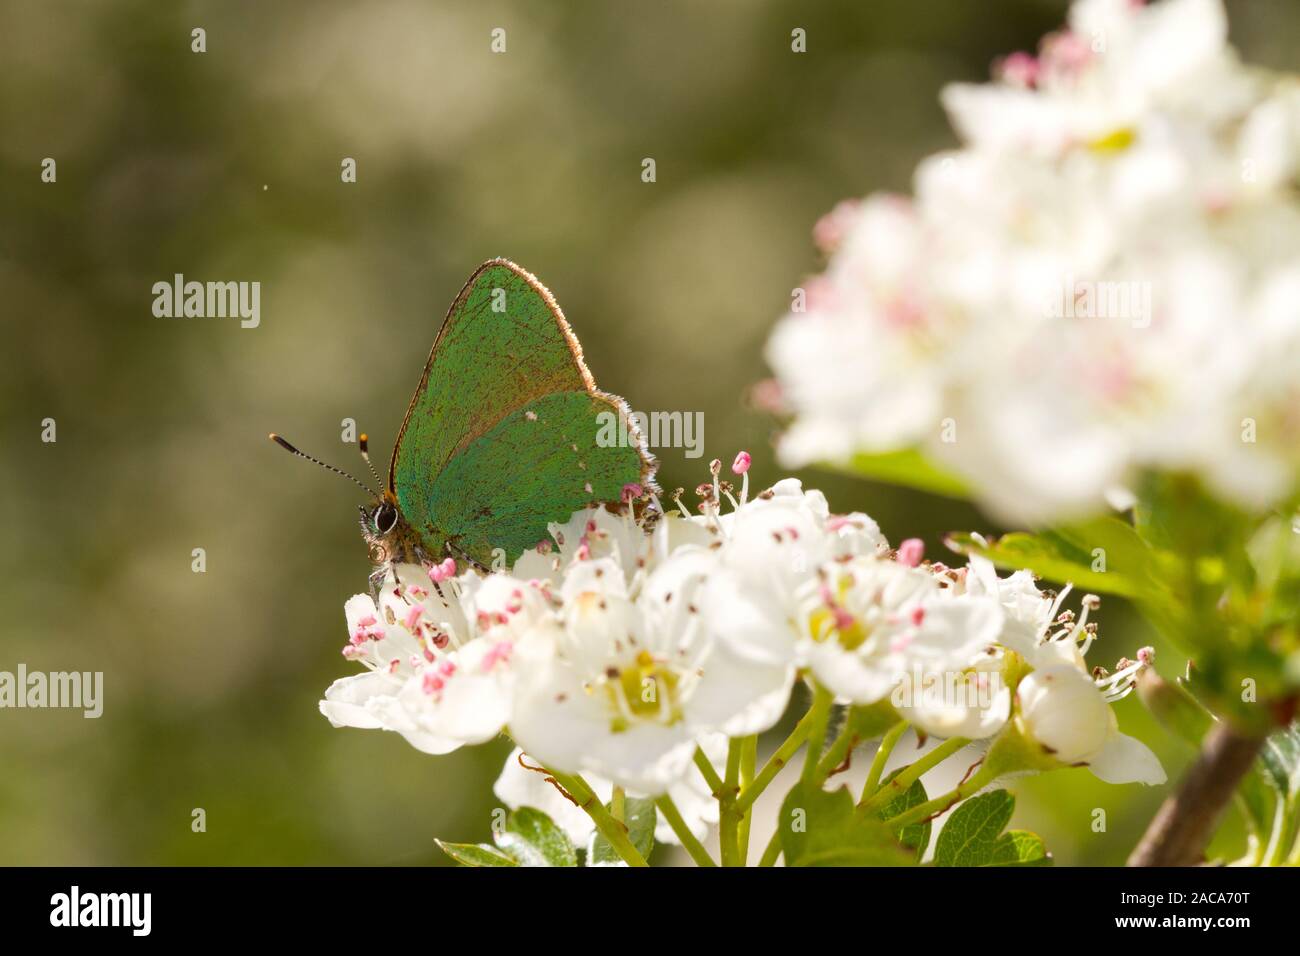 Porte-queue vert (Callophrys rubi) papillon adulte se nourrit de l'aubépine (Crataegus sp.) s'épanouir. Powys, Pays de Galles. Mai. Banque D'Images